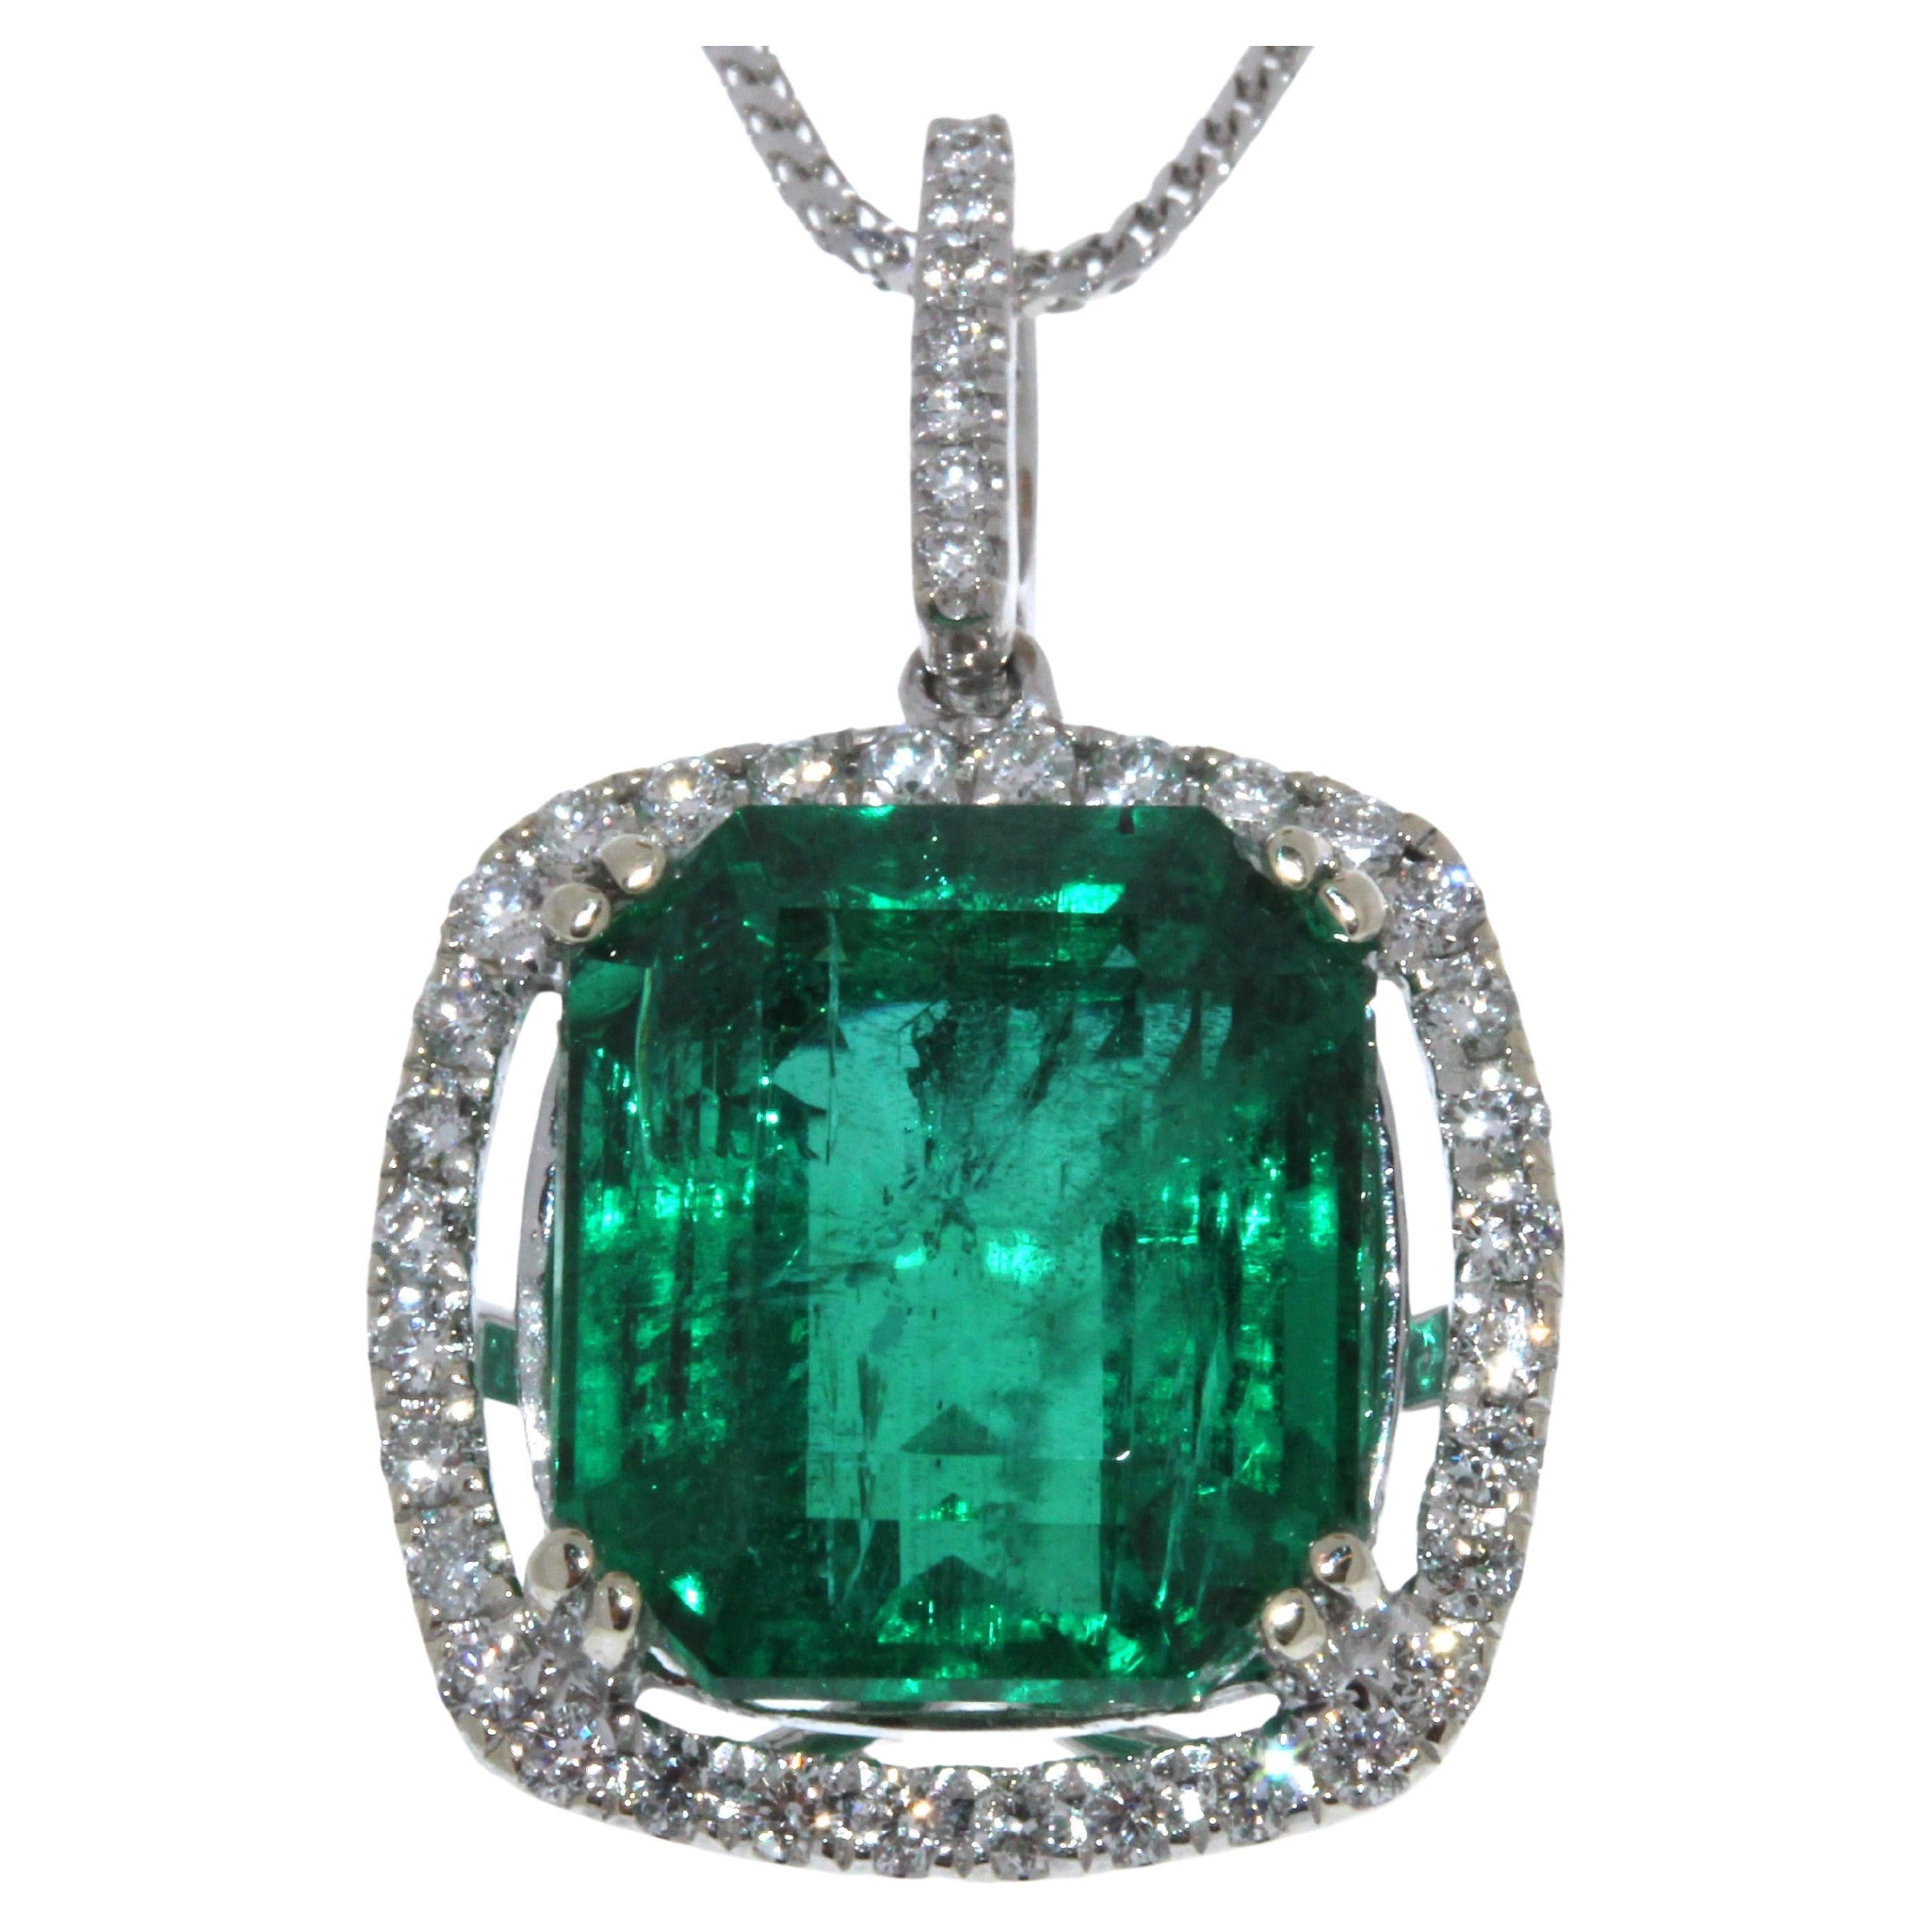 9.34 Carat Square Emerald & Diamond Fashion Pendant in 18k White Gold